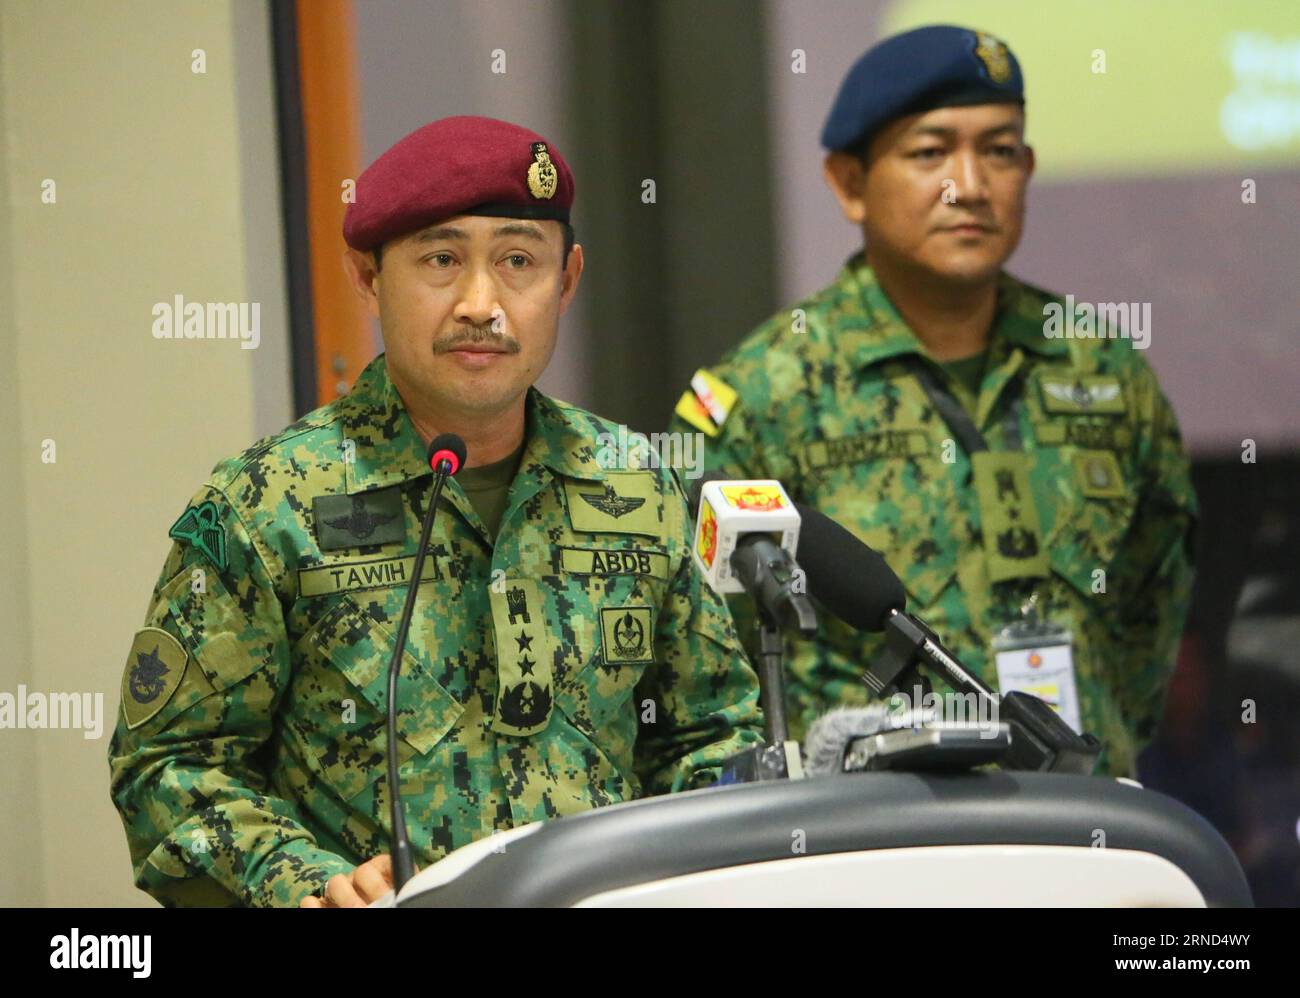 Marine-Übung vor Brunei (160503) - BANDAR SERI BEGAWAN, 3 maggio 2016 -- Comandante delle forze armate reali del Brunei (RBAF) Mohd Tawih (L) tiene un discorso alla cerimonia di apertura dell'esercitazione presso il Multi National Coordination Centre di banda seri Begawan, capitale del Brunei, 3 maggio 2016. L'ASEAN (Associazione delle Nazioni del Sud-Est Asiatico) riunione dei ministri della difesa-più esercitazione sulla sicurezza marittima e antiterrorismo (ADMM Plus MS & CT) è stato ufficialmente lanciato martedì con una cerimonia di apertura presso il Multi National Coordination Centre (MNCC) di Bandar seri Begawan, capitale del Brunei. Marine Foto Stock